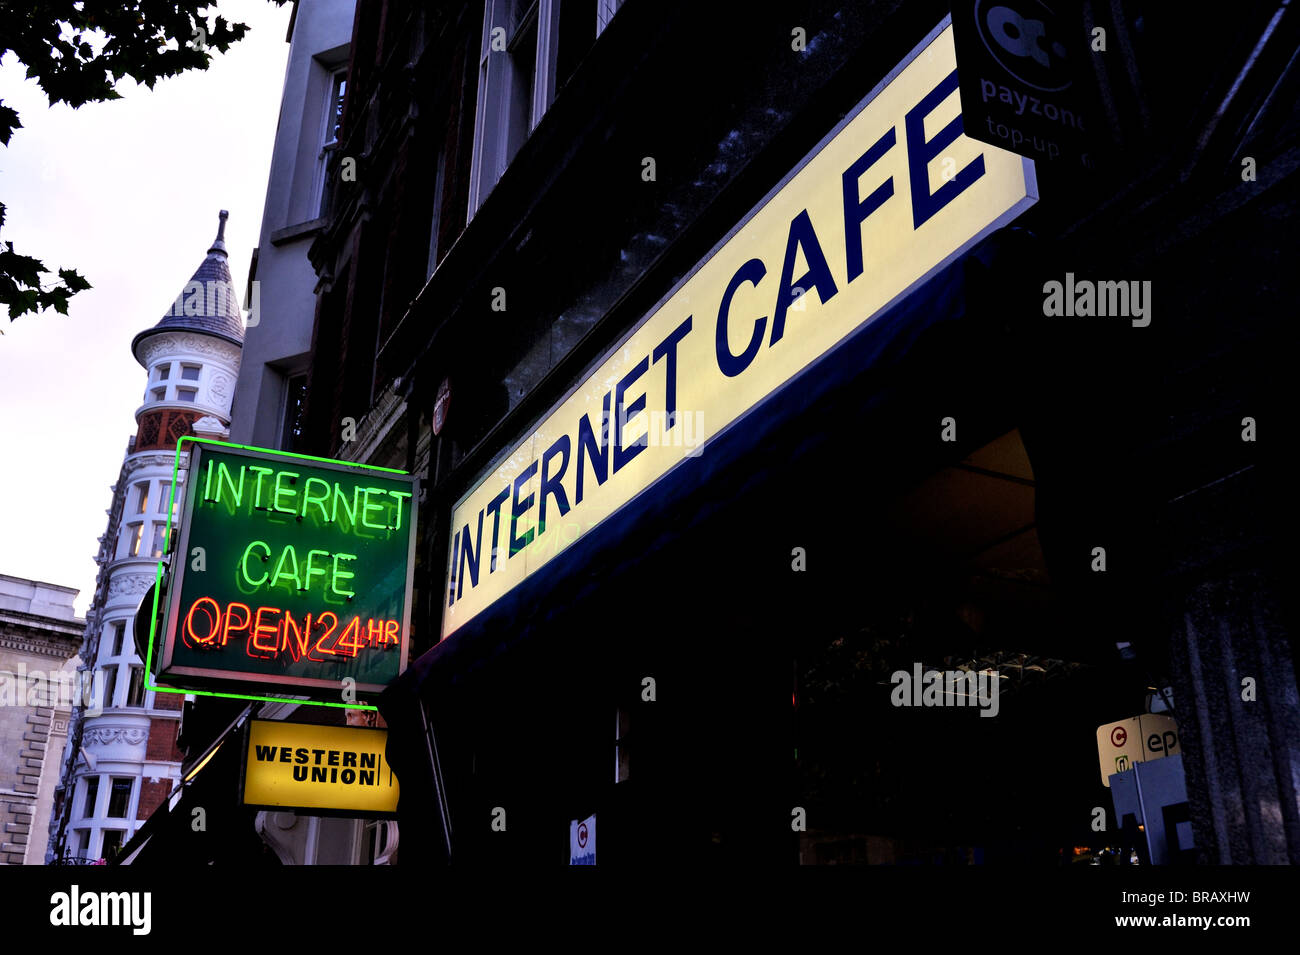 Internet Café 24 Hour Sign Stock Photo